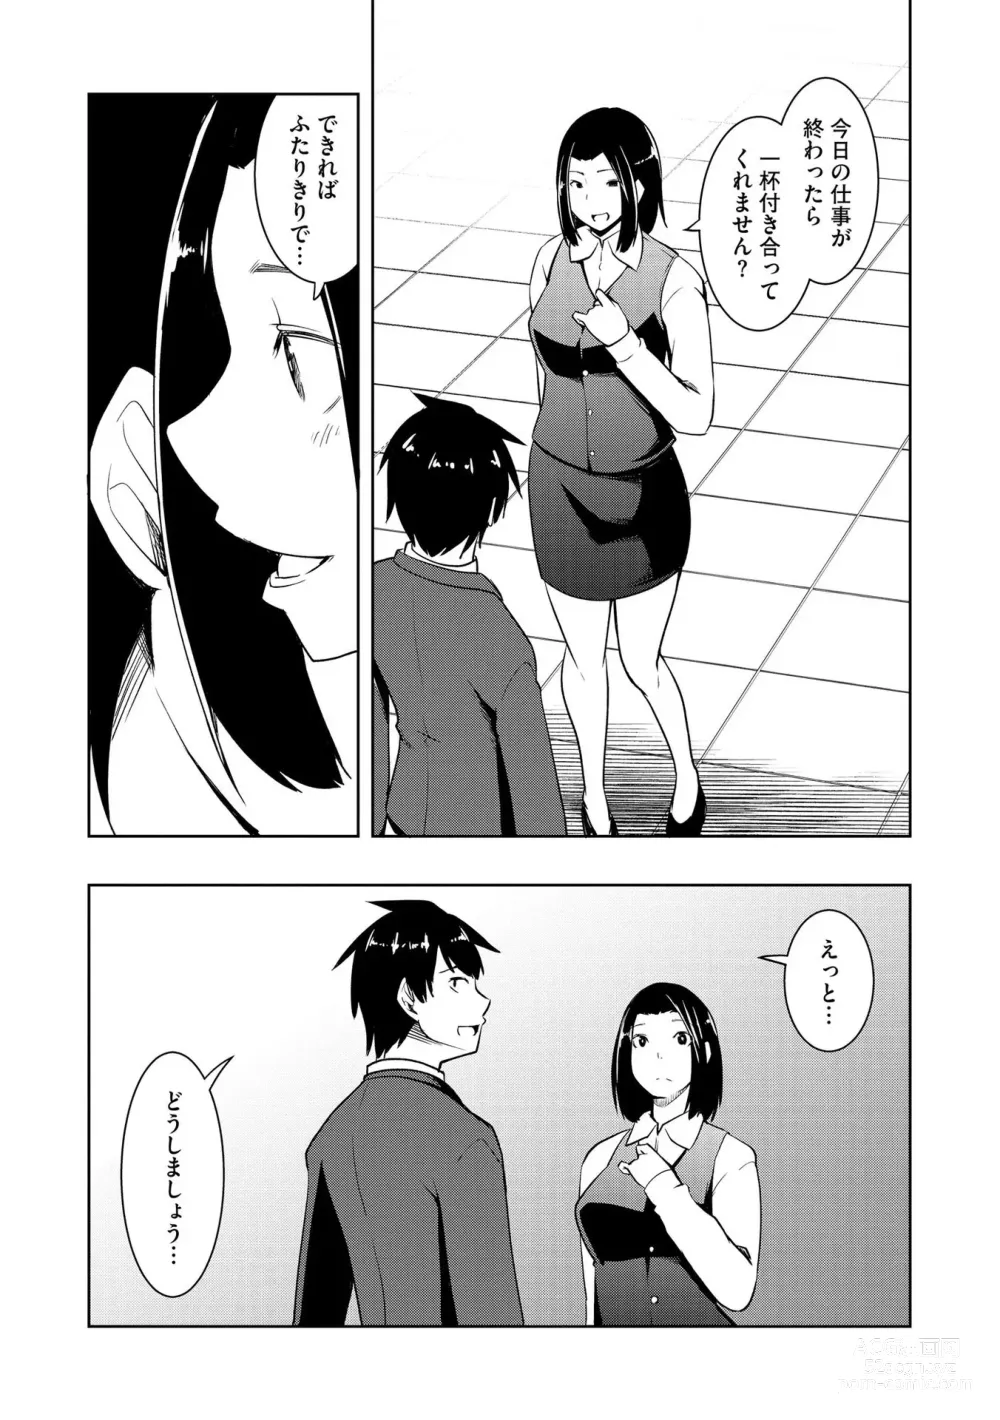 Page 198 of manga Kai-In Hontou wa Yarashii Toshi Densetsu